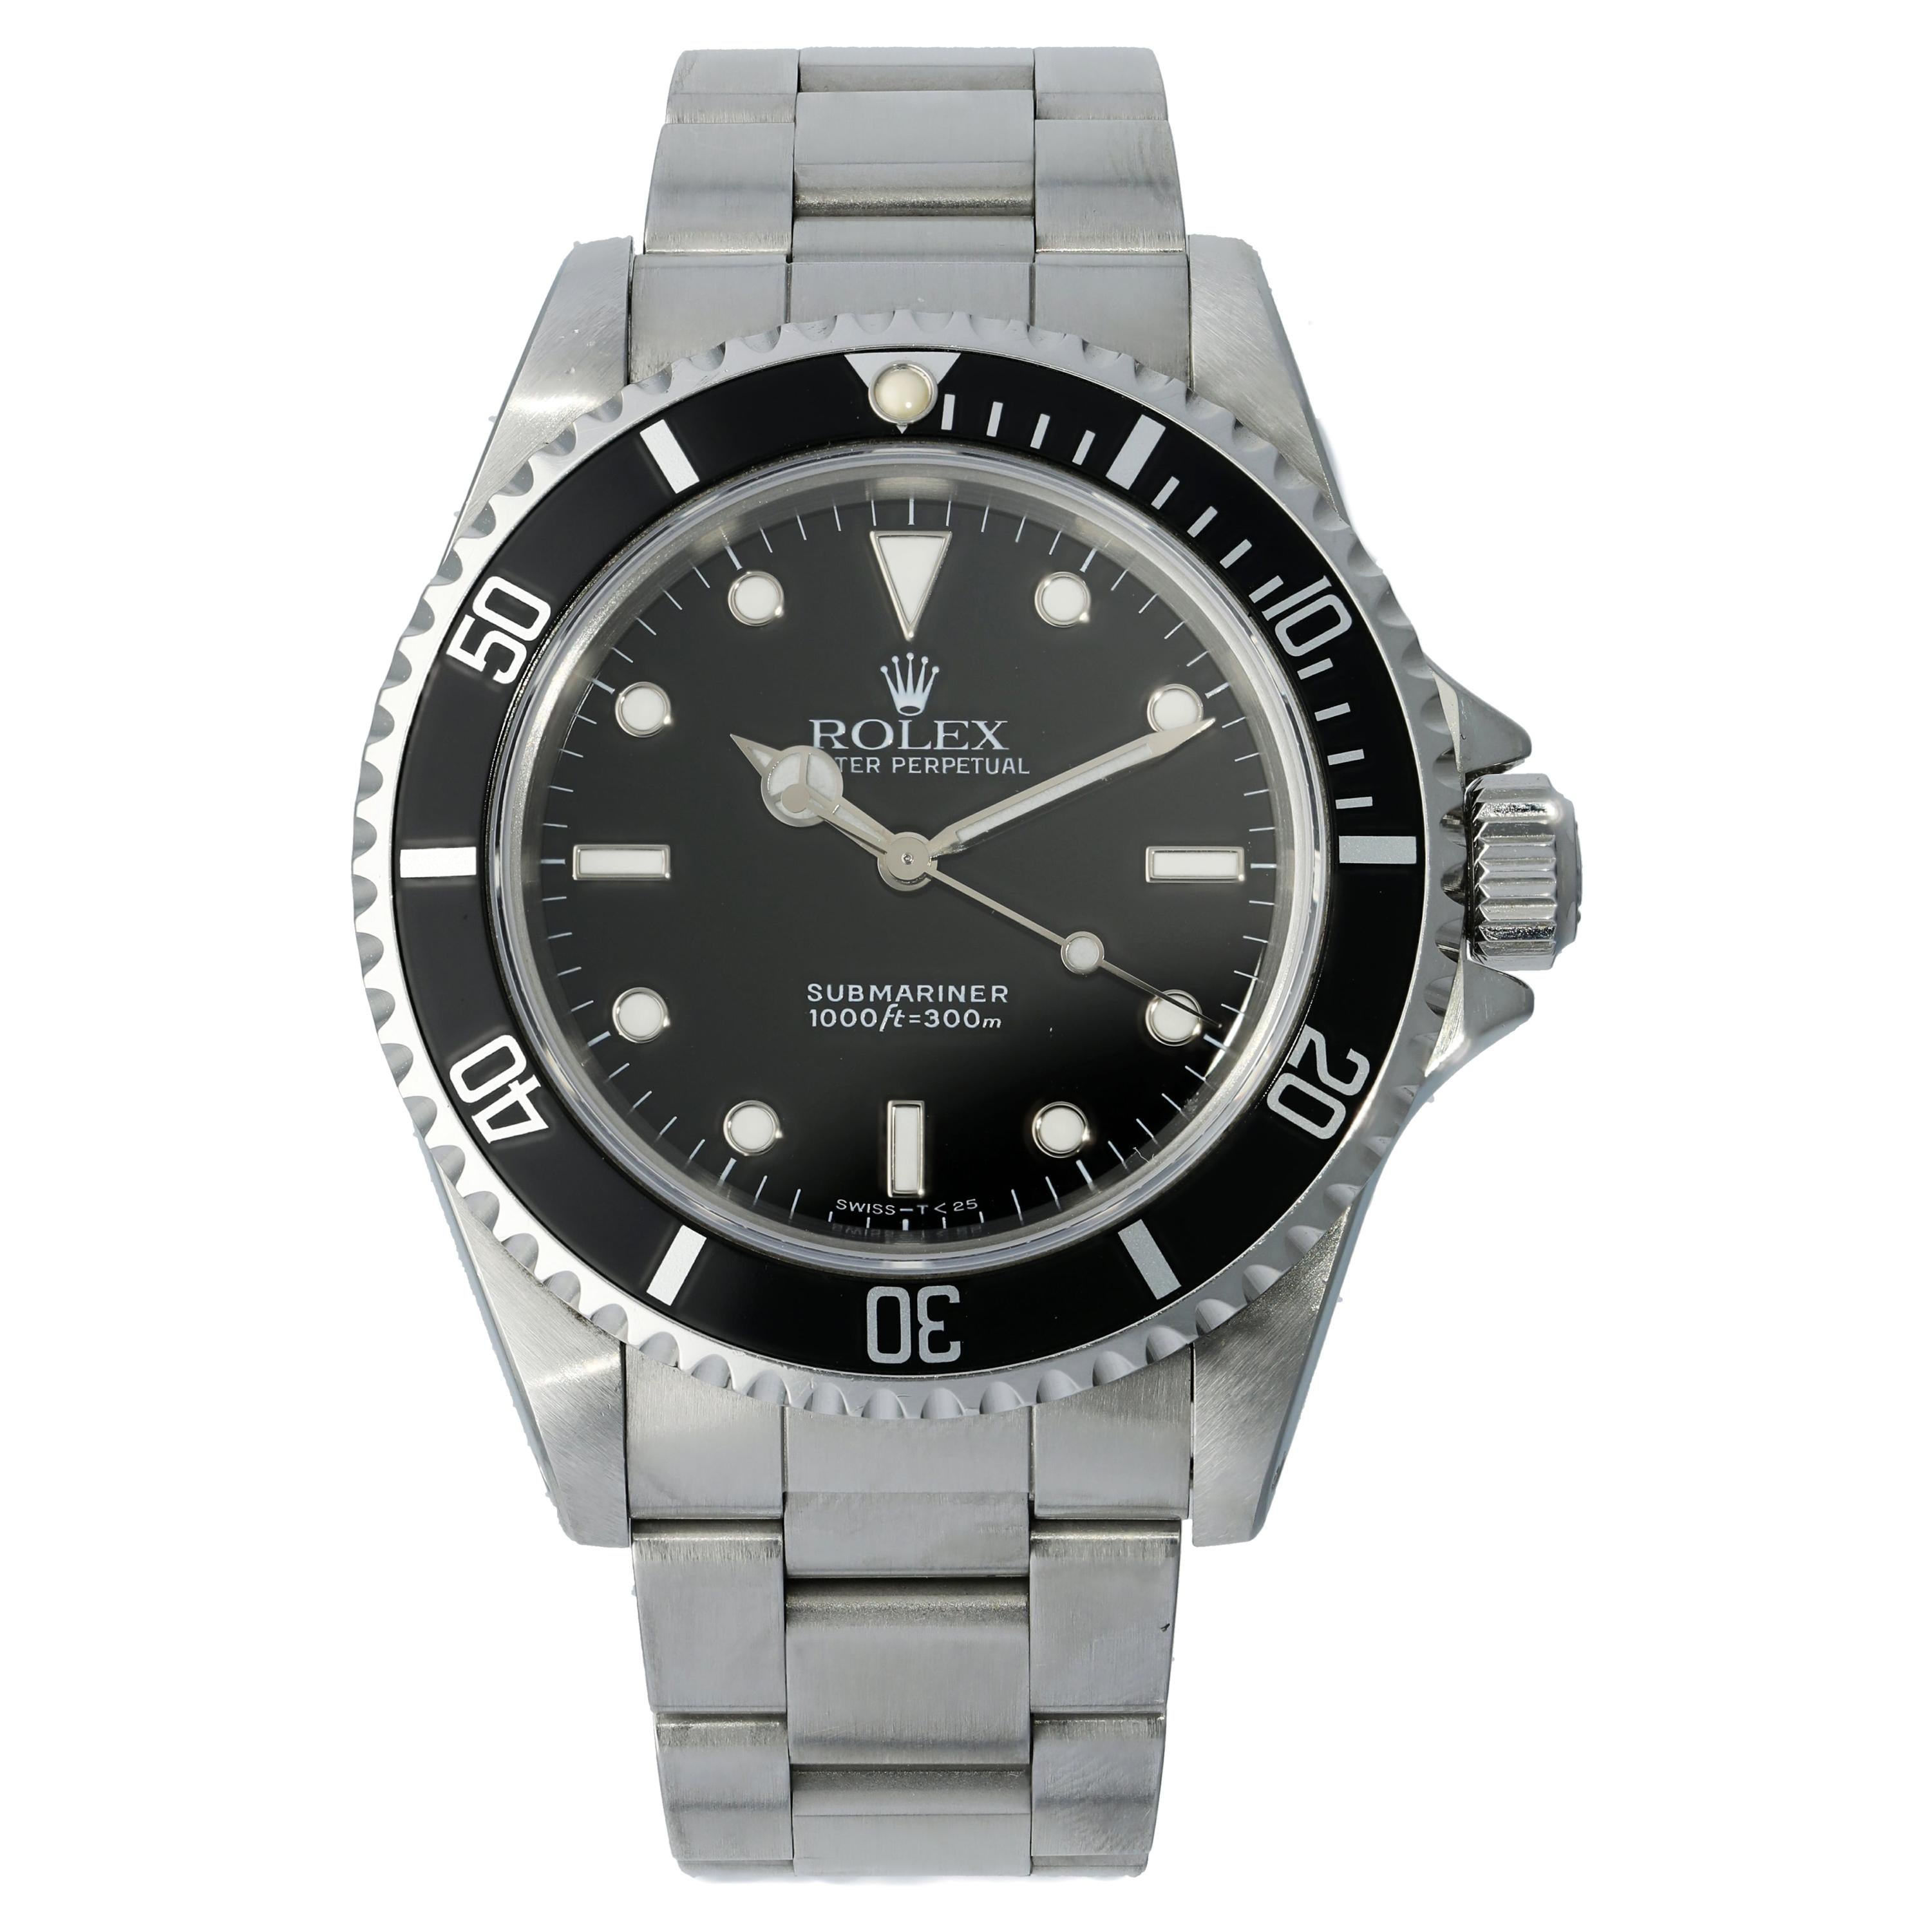 Rolex Submariner No Date 14060 Men's Watch